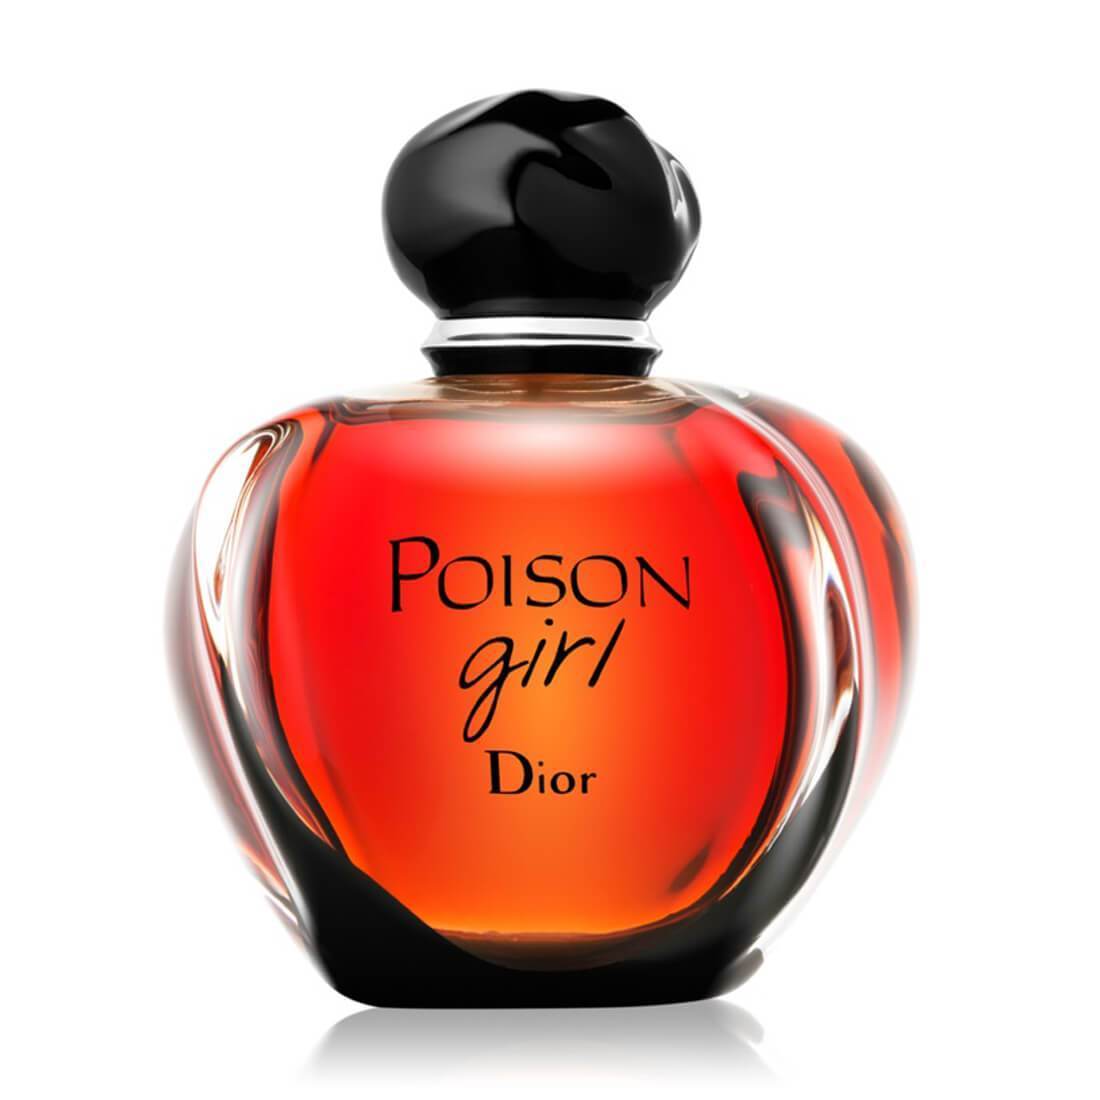 Chia sẻ với hơn 56 về dior poison girl perfume  cdgdbentreeduvn